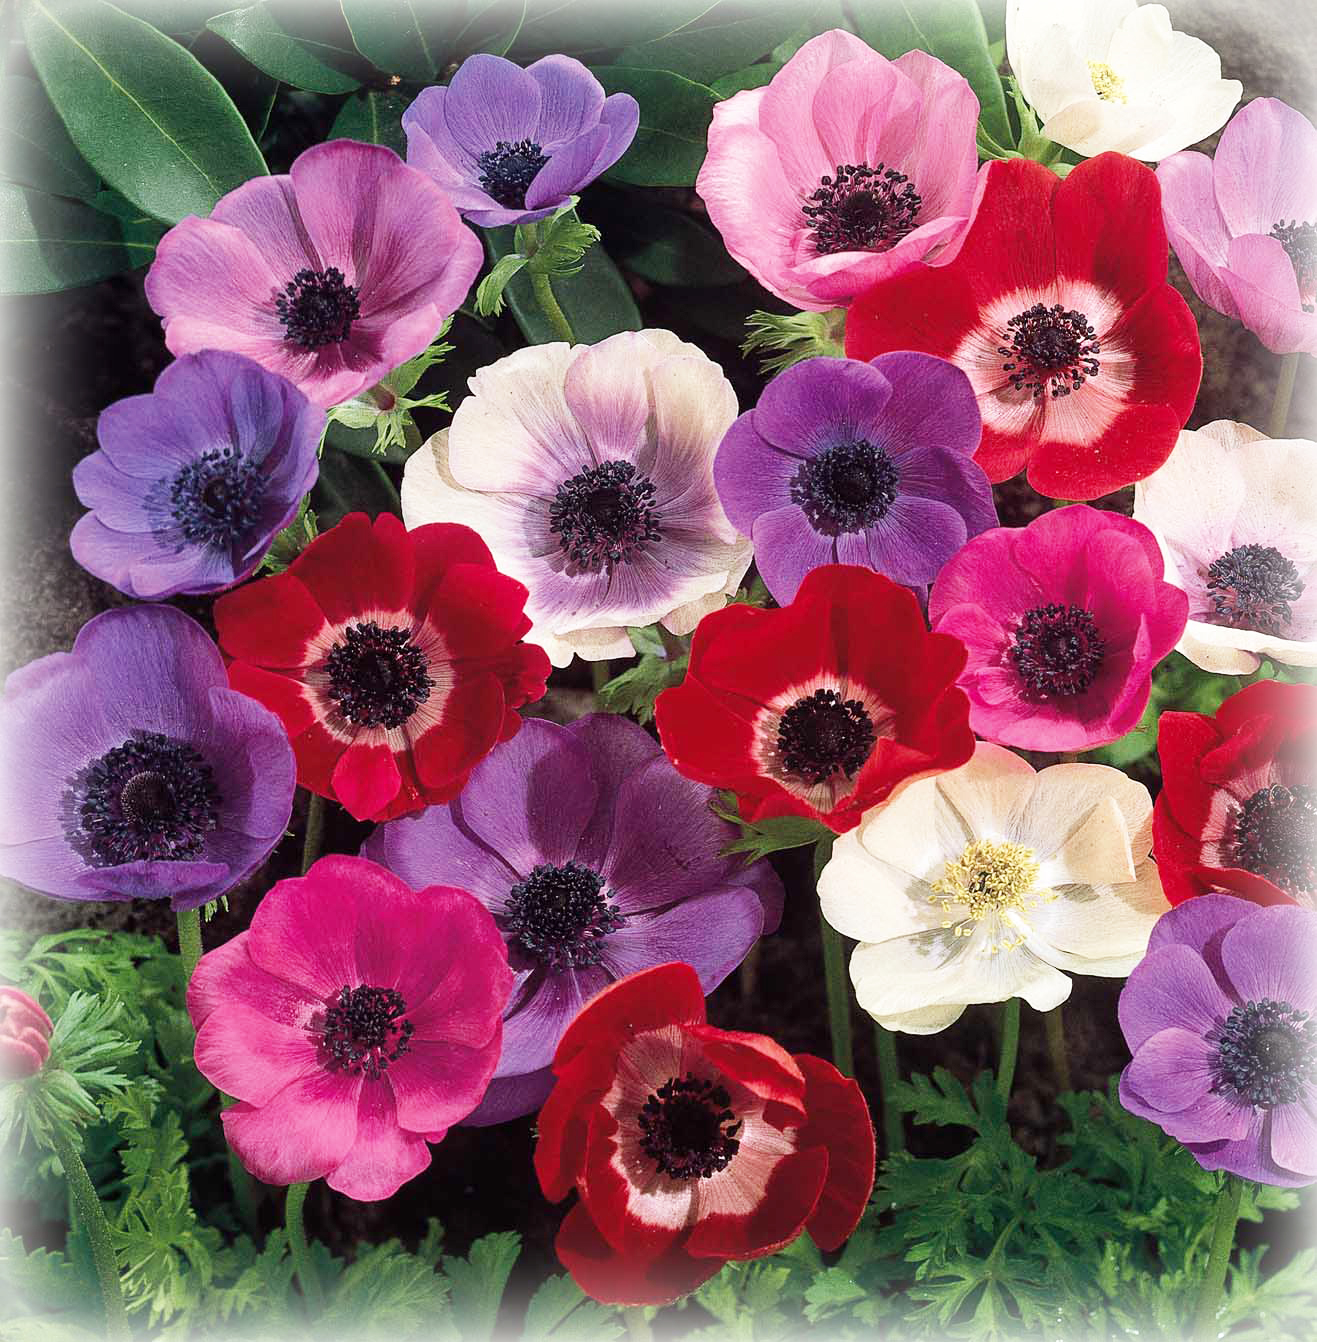 fiori e significati con immagini - Linguaggio dei fiori Wikipedia